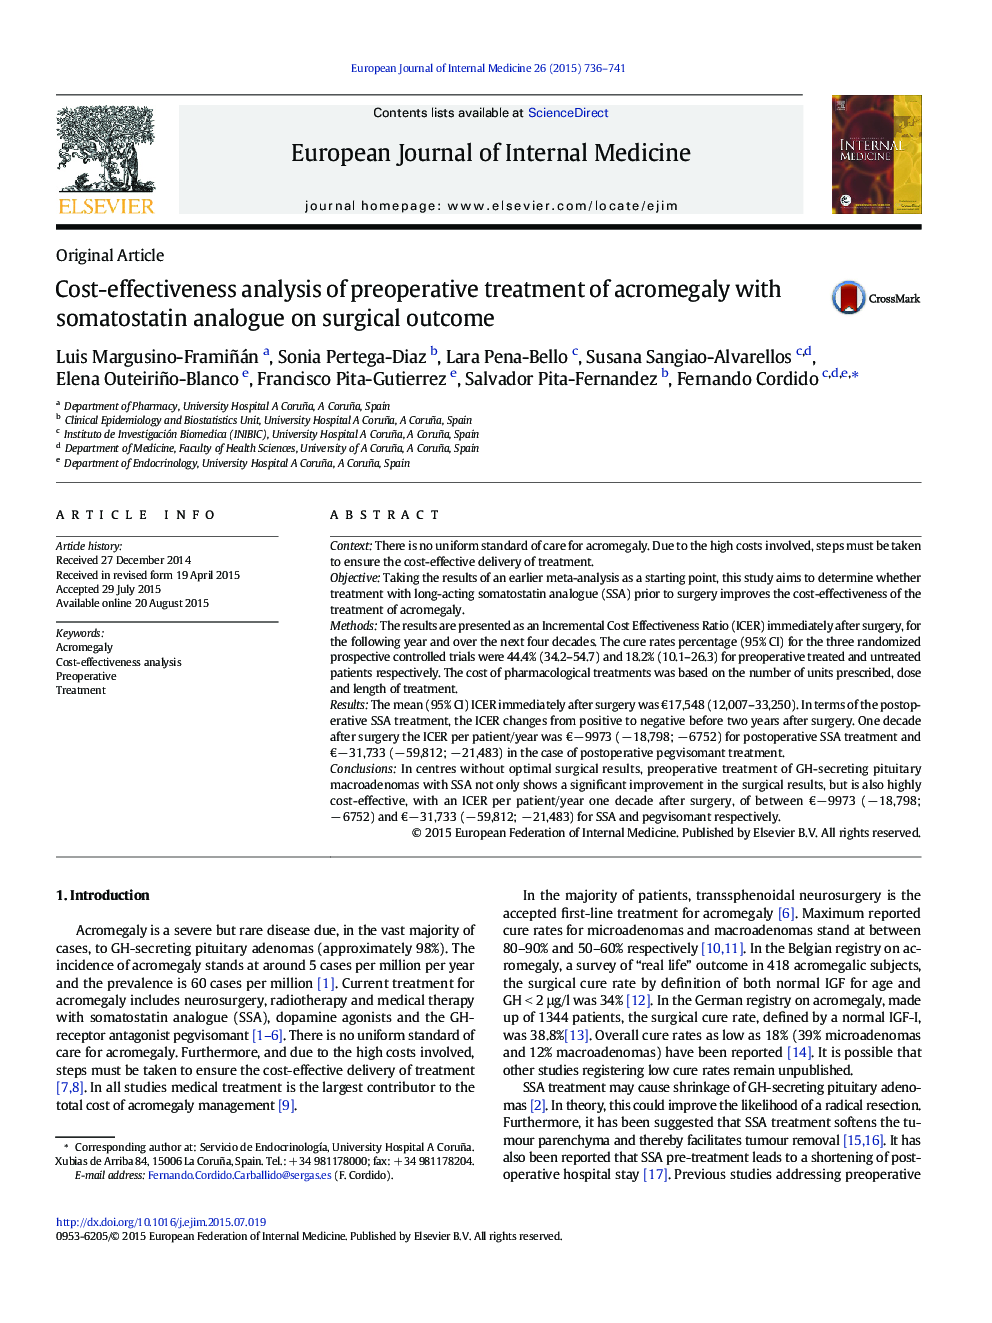 تجزیه و تحلیل هزینه-اثربخشی درمان قبل از عمل اکرومگالی با آنالوگ سموتوستاتین بر نتایج جراحی 